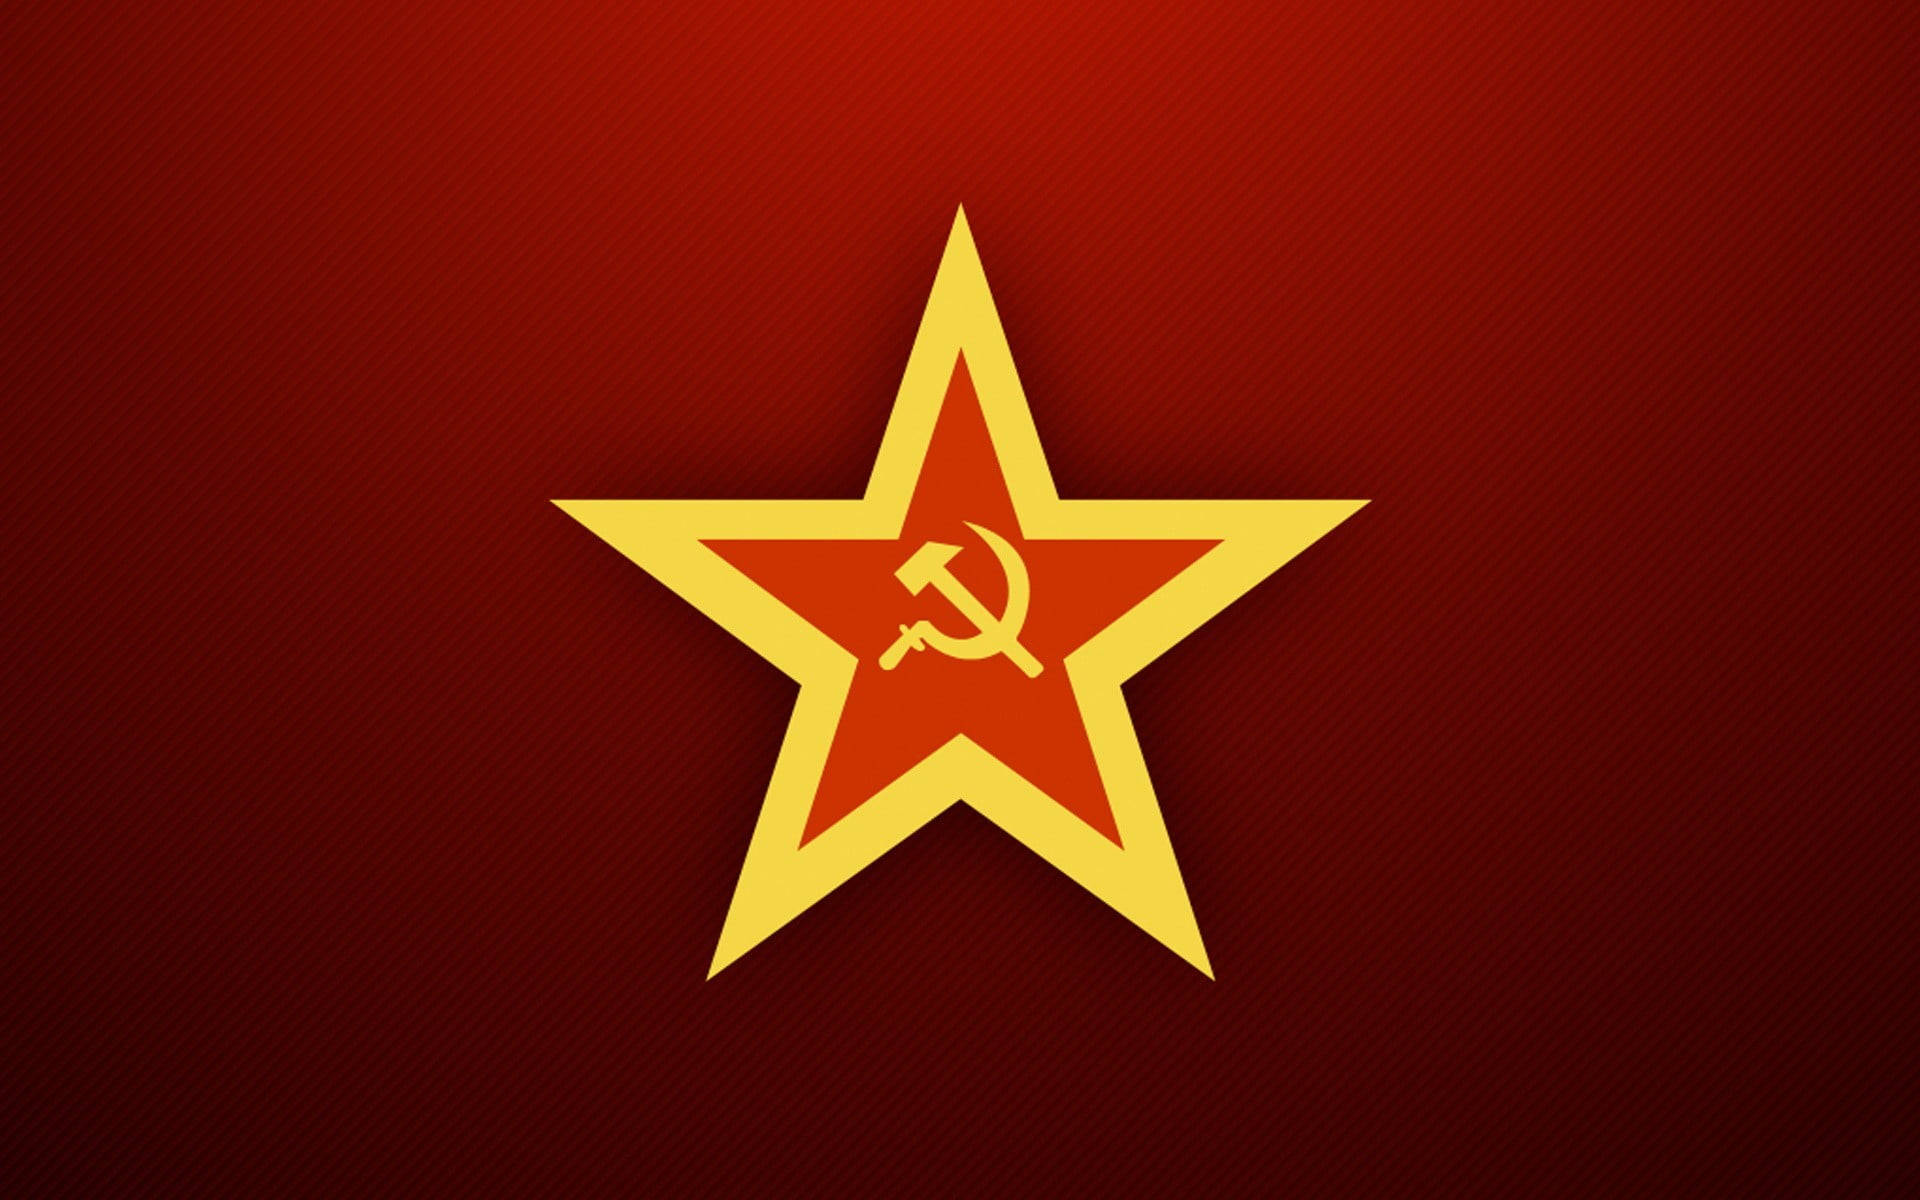 Sovjetunionensflagga Logo På Stjärnan. Wallpaper